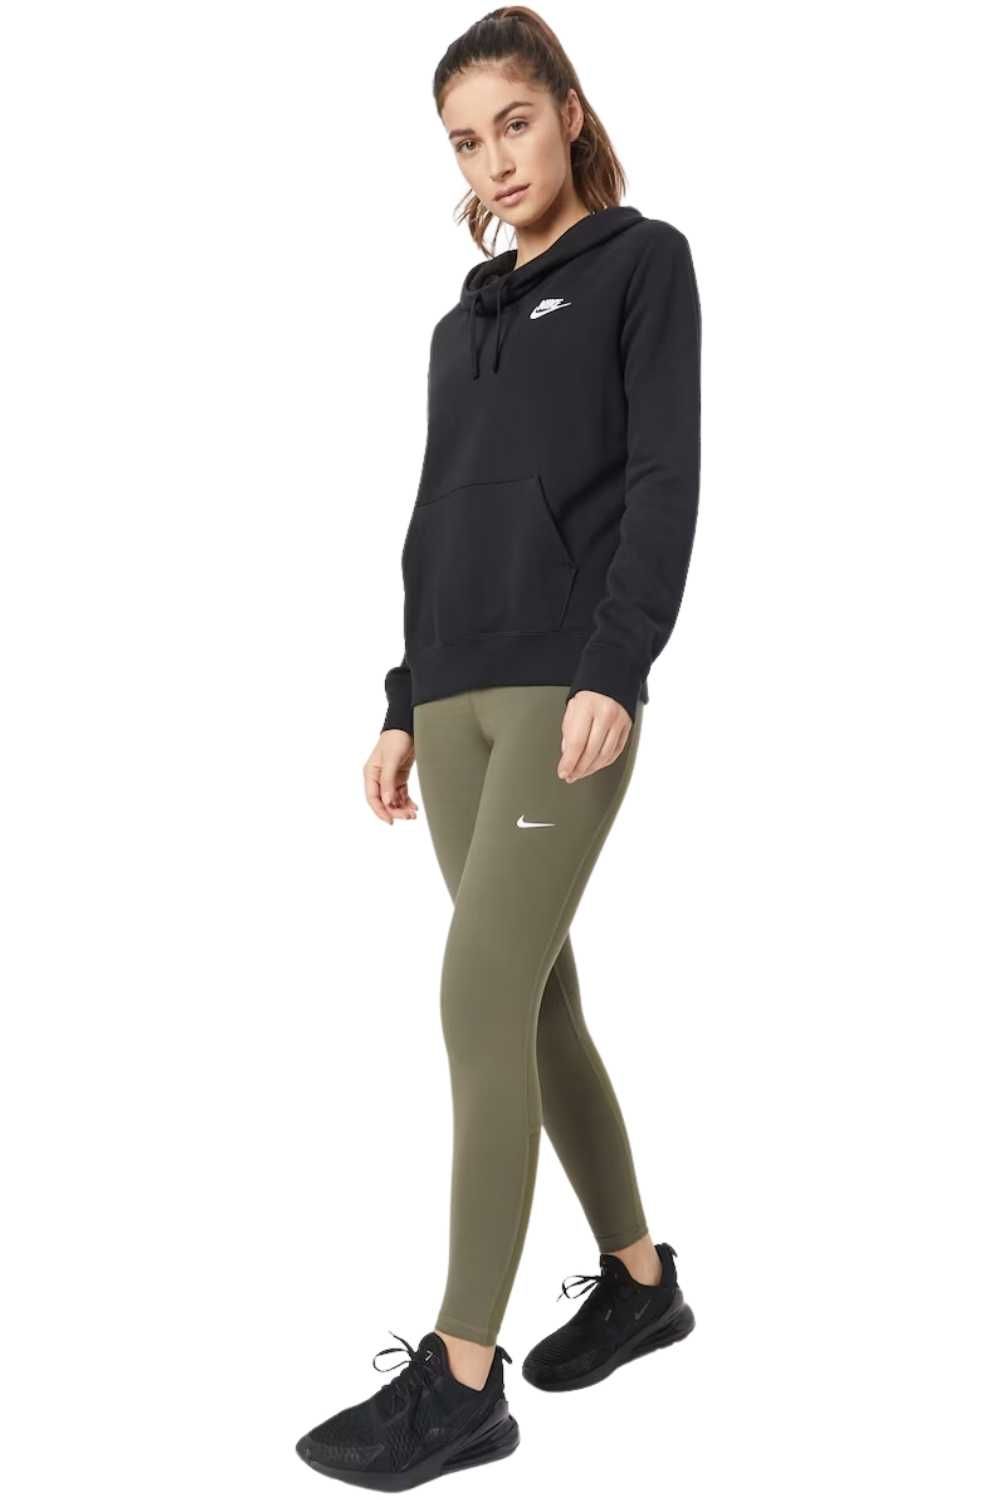 Legginsy damskie Nike Pro sportowe Khaki: różne rozmiary